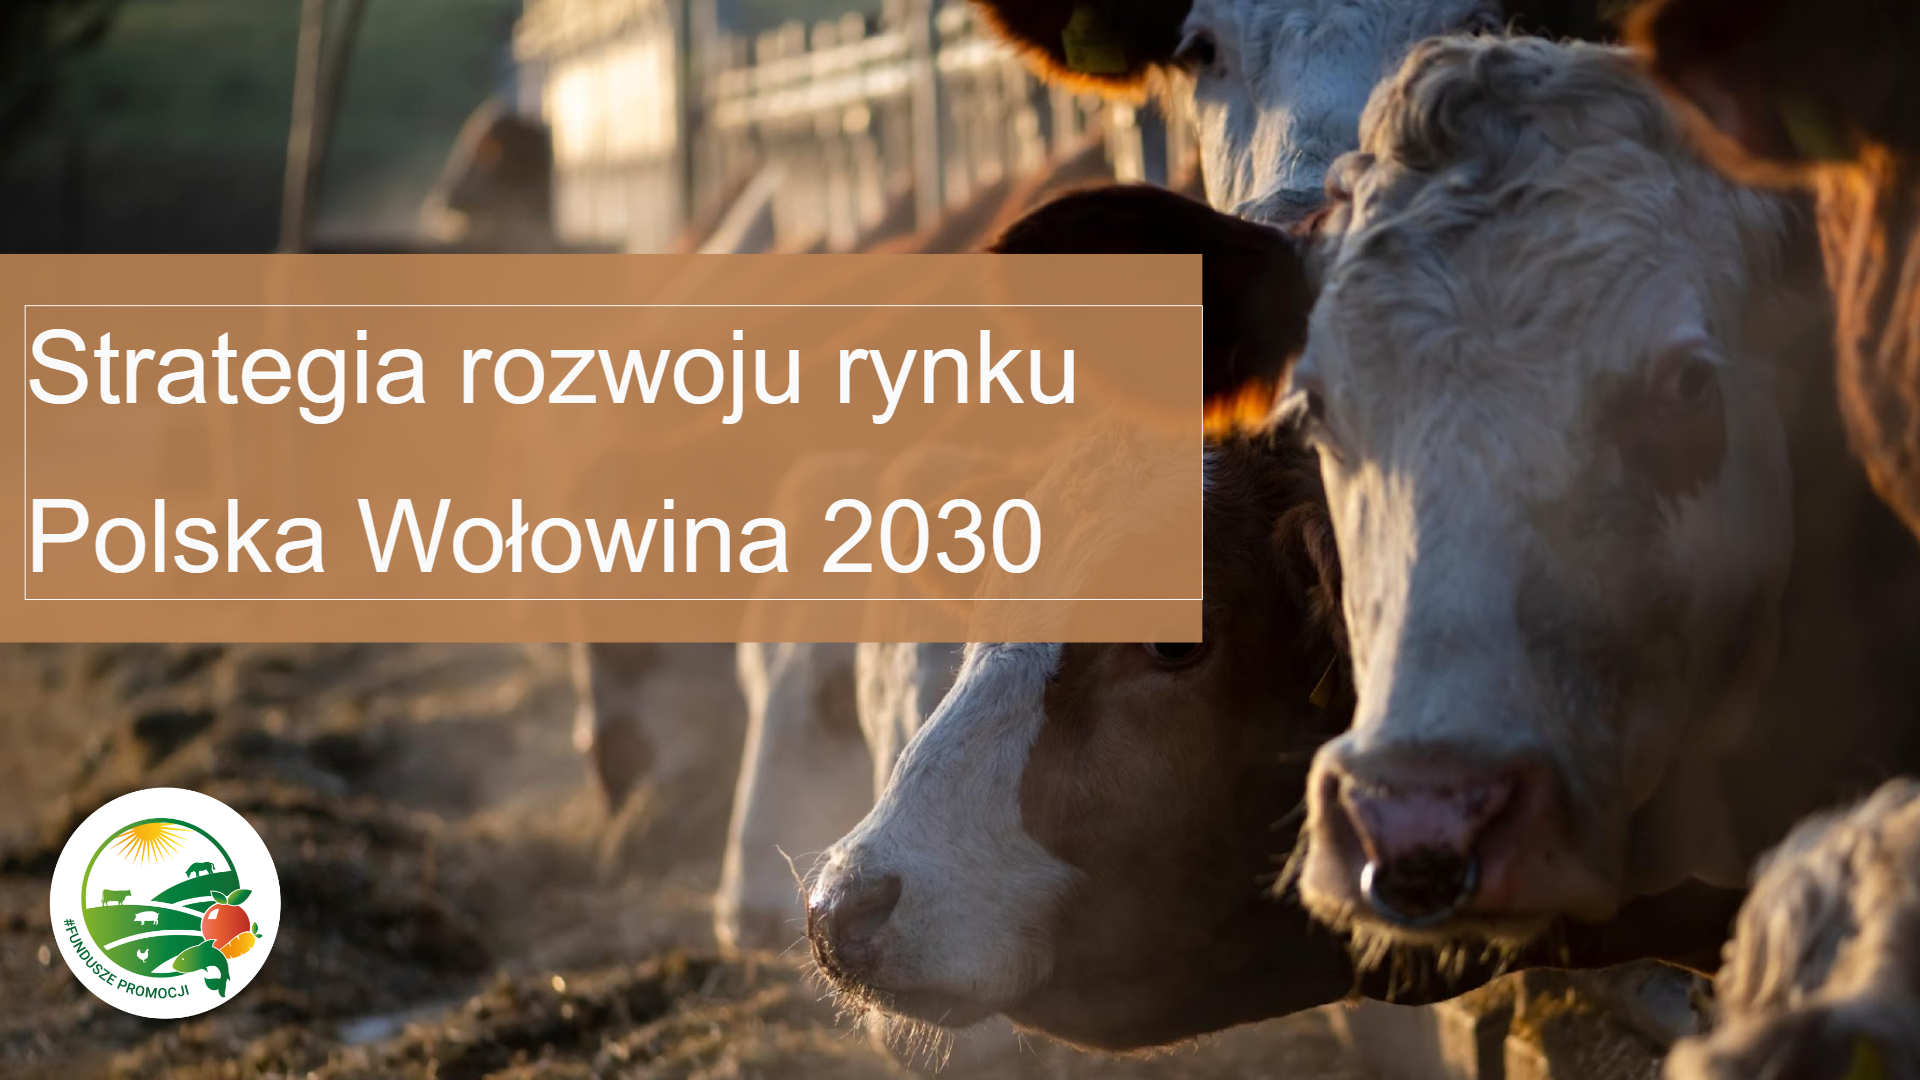 Strategia rozwoju rynku polska wołowina 2030